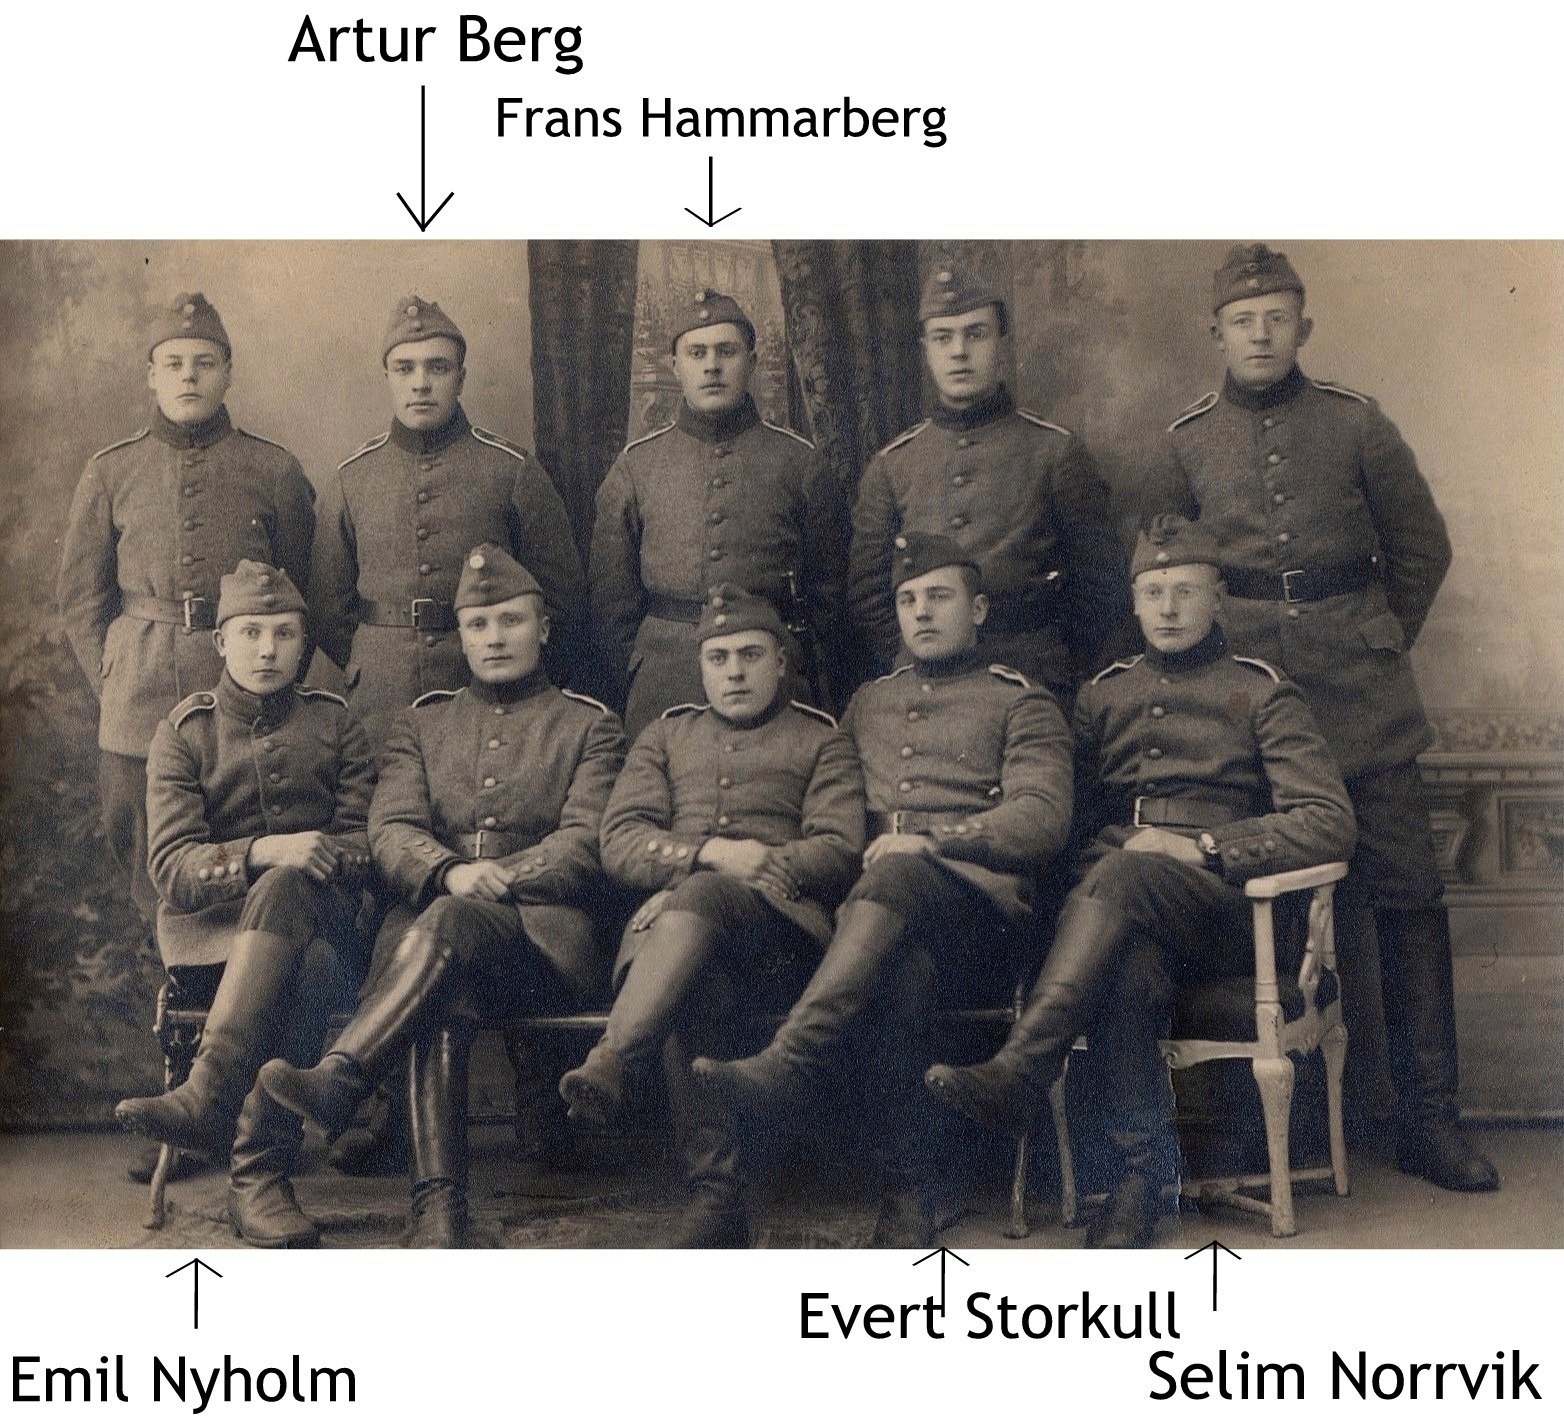 Efter en lång paus på flera år infördes allmän värnplikt i det självständiga Finland år 1918. De här herrarna var nog bland de första som ryckte in.